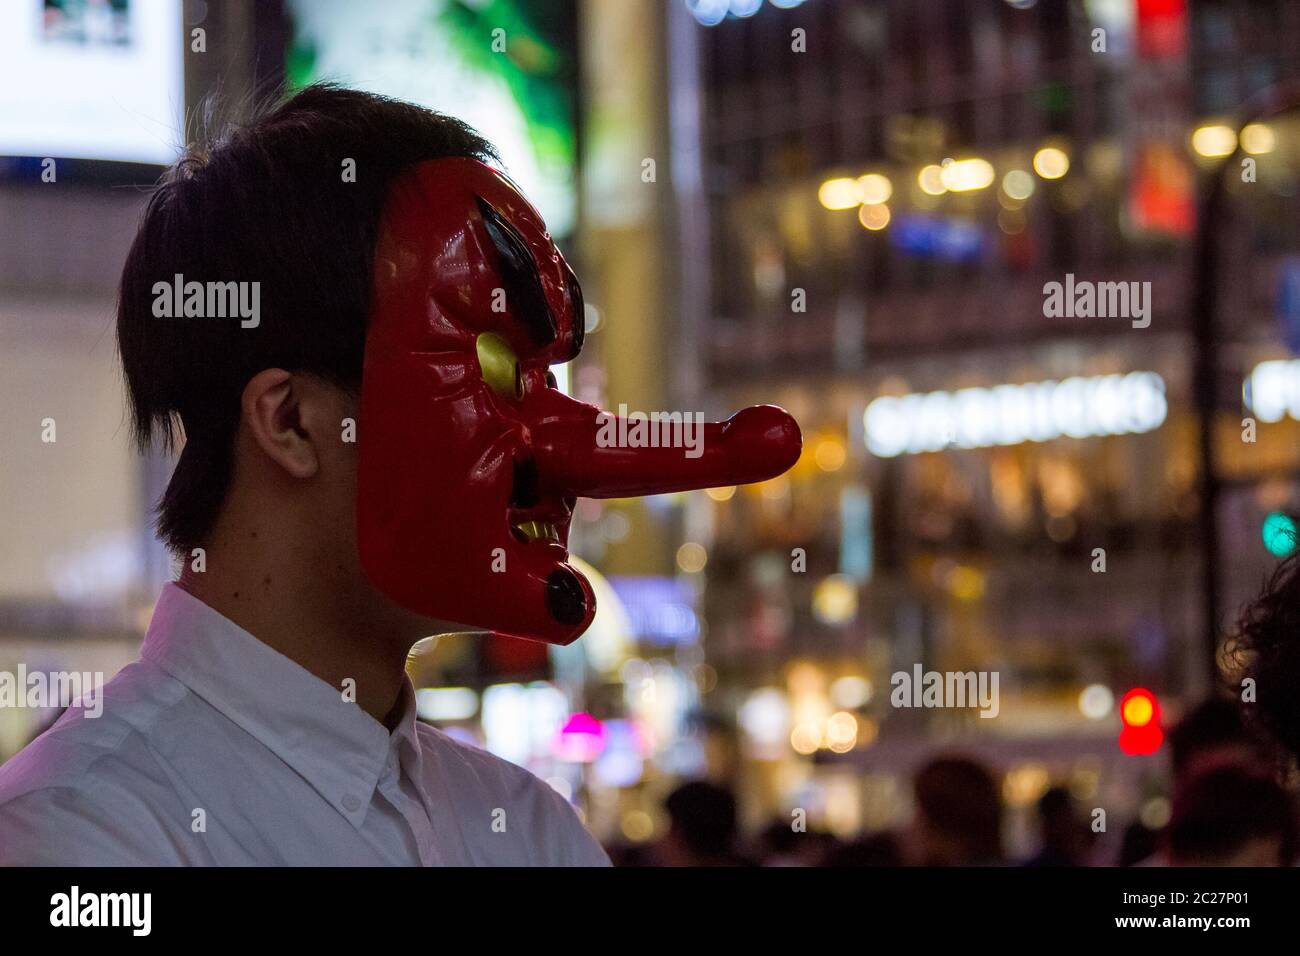 Ein junger Japaner trägt eine Tengu-Maske, als er Menschen für ein youtube-Video auf dem Hachiko Square, Shibuya, Tokio, Japan interviewt. Stockfoto